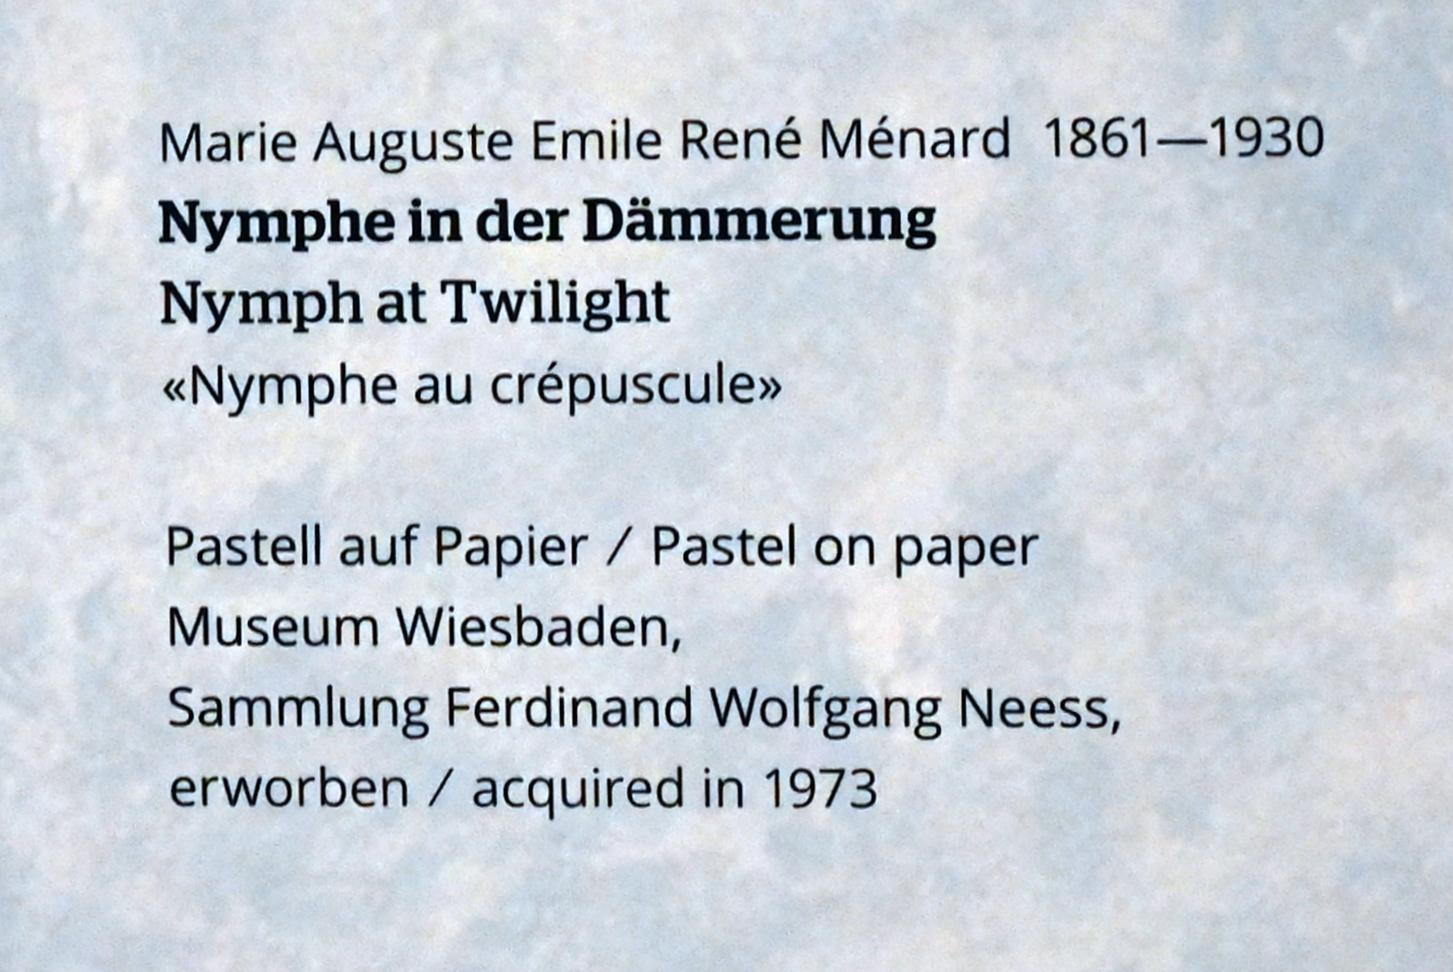 Marie Auguste Émile René Ménard (Undatiert), Nymphe in der Dämmerung, Wiesbaden, Museum Wiesbaden, Jugendstil, Undatiert, Bild 2/2